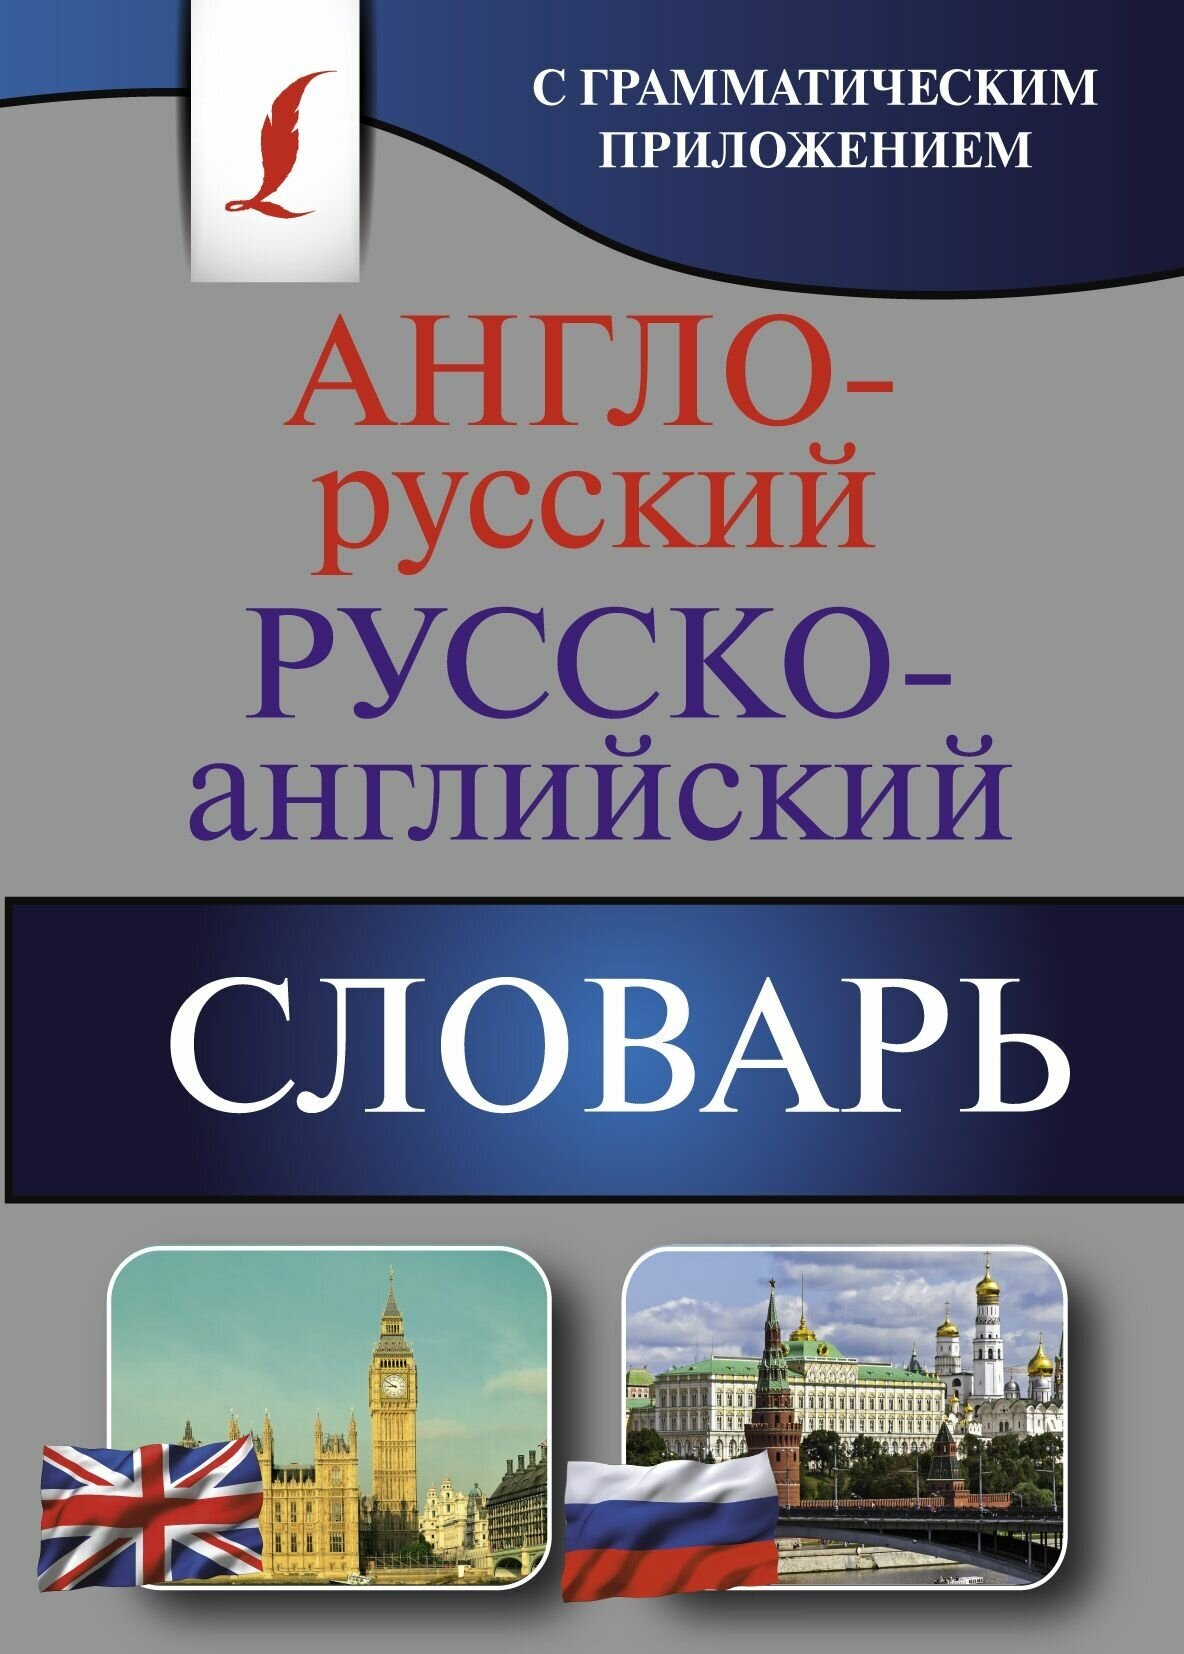 Англо-русский Русско-английский словарь с грамматическим приложением